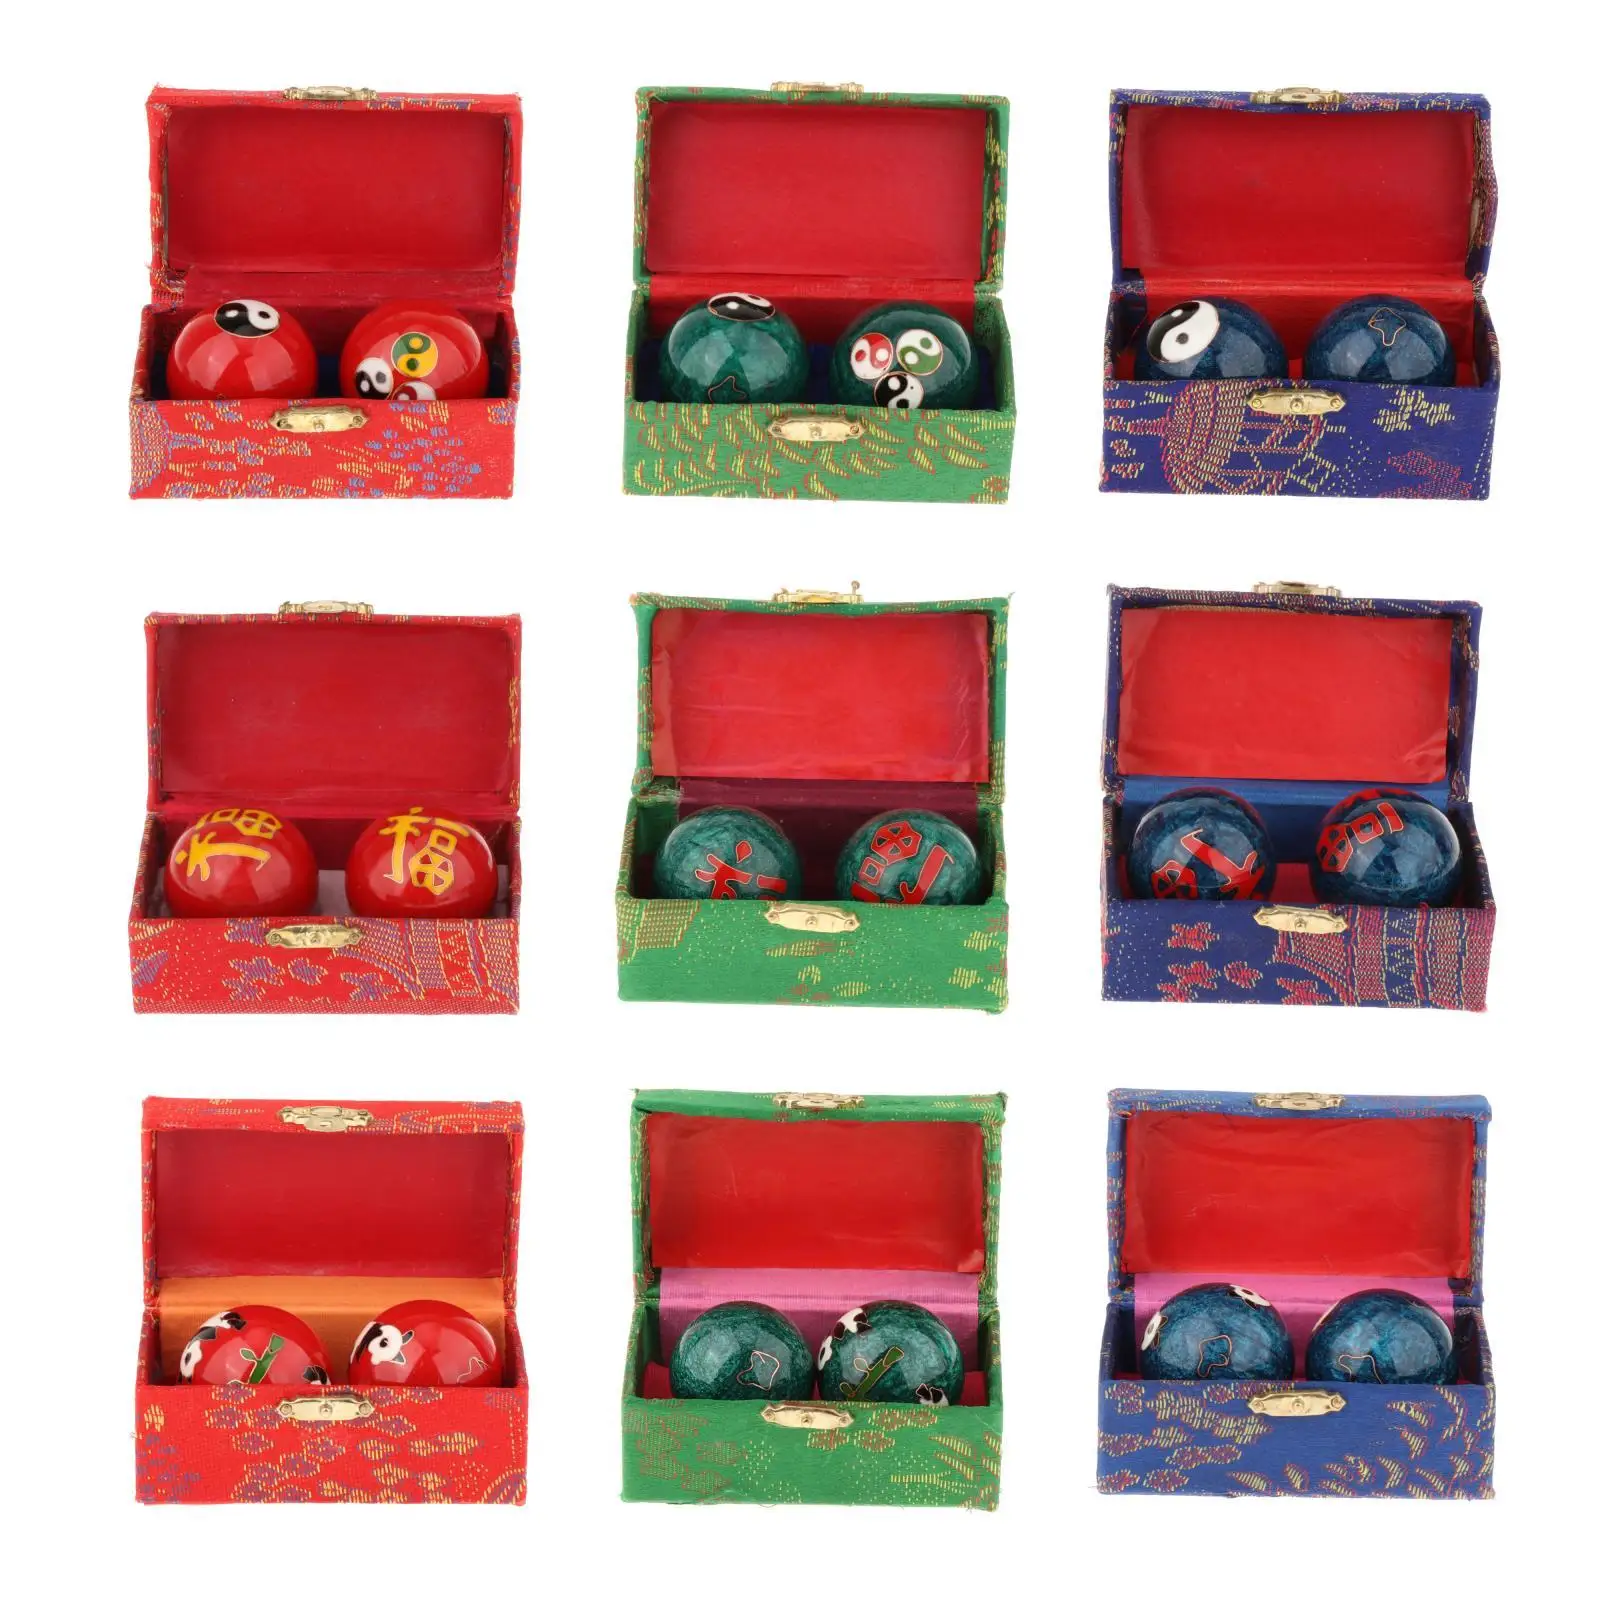 2 Pieces Hand Massage Balls with Storage Box for Children Parents Elderly